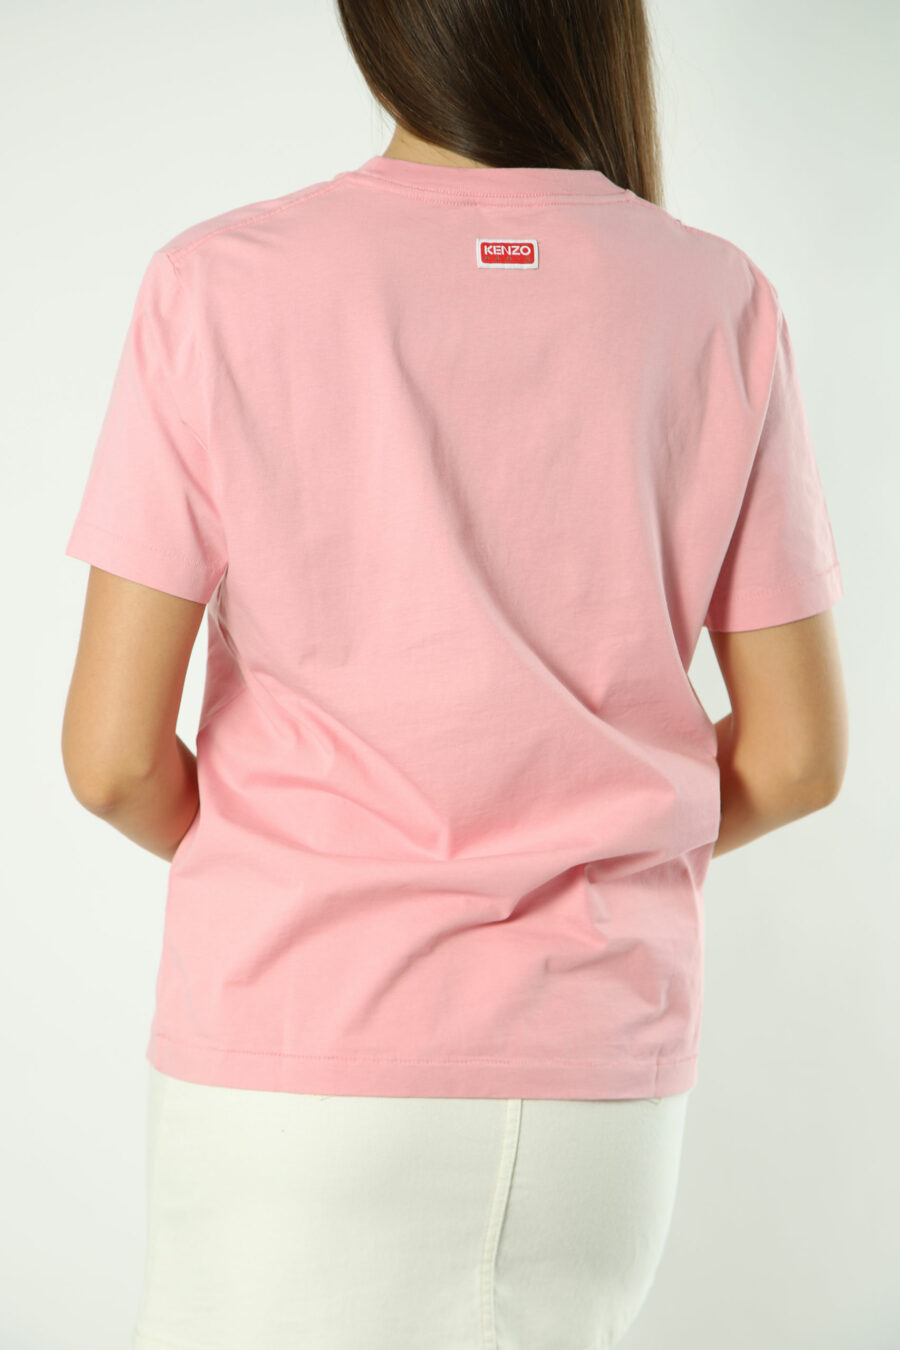 T-shirt rosa com maxilogo de flores laranja - Fotos 1404